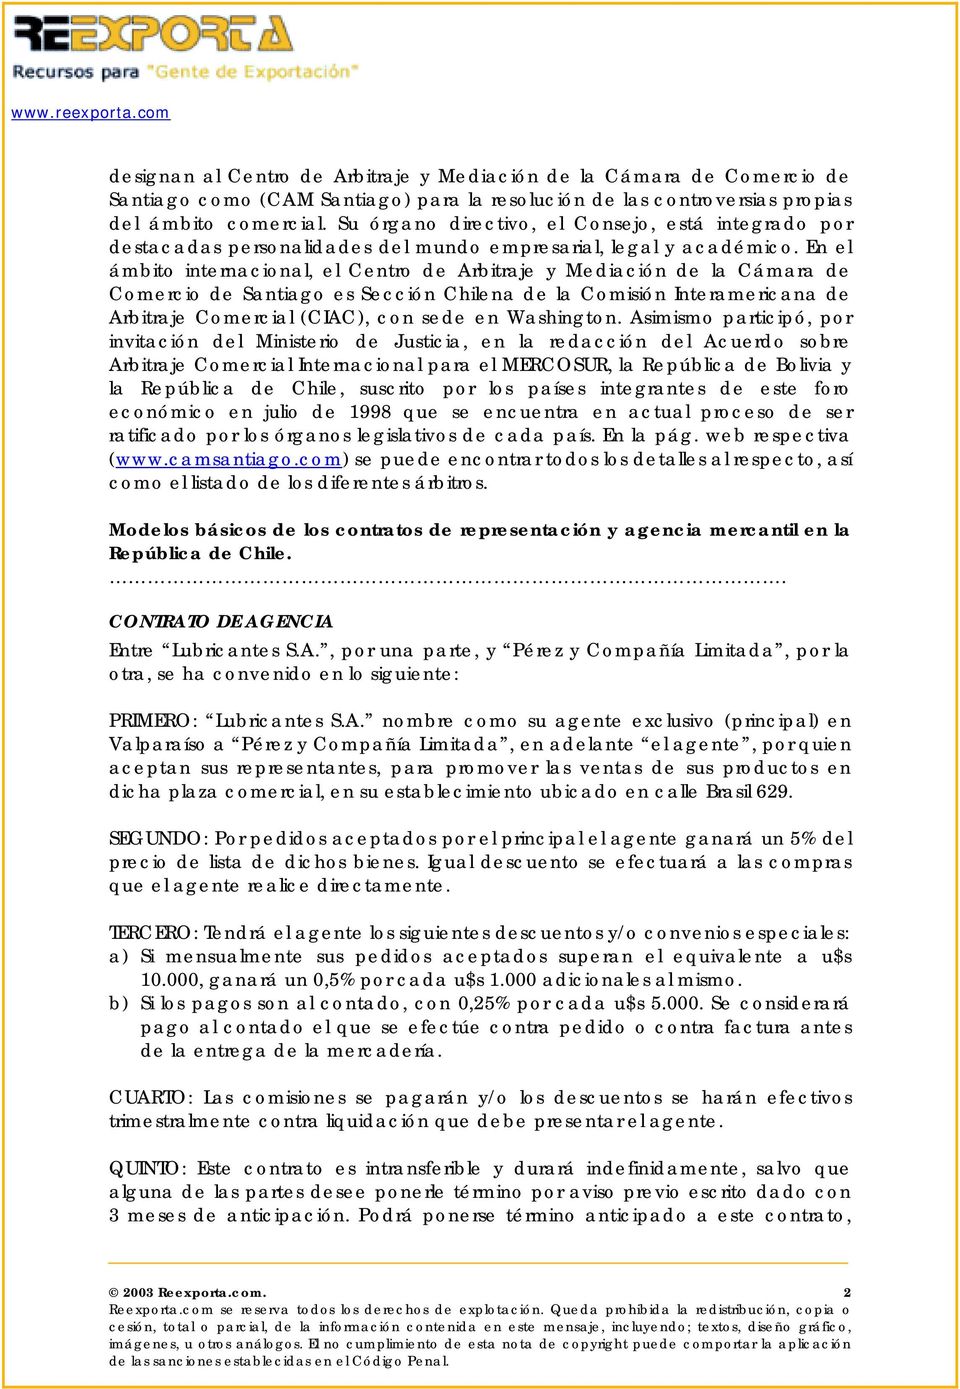 En el ámbito internacional, el Centro de Arbitraje y Mediación de la Cámara de Comercio de Santiago es Sección Chilena de la Comisión Interamericana de Arbitraje Comercial (CIAC), con sede en